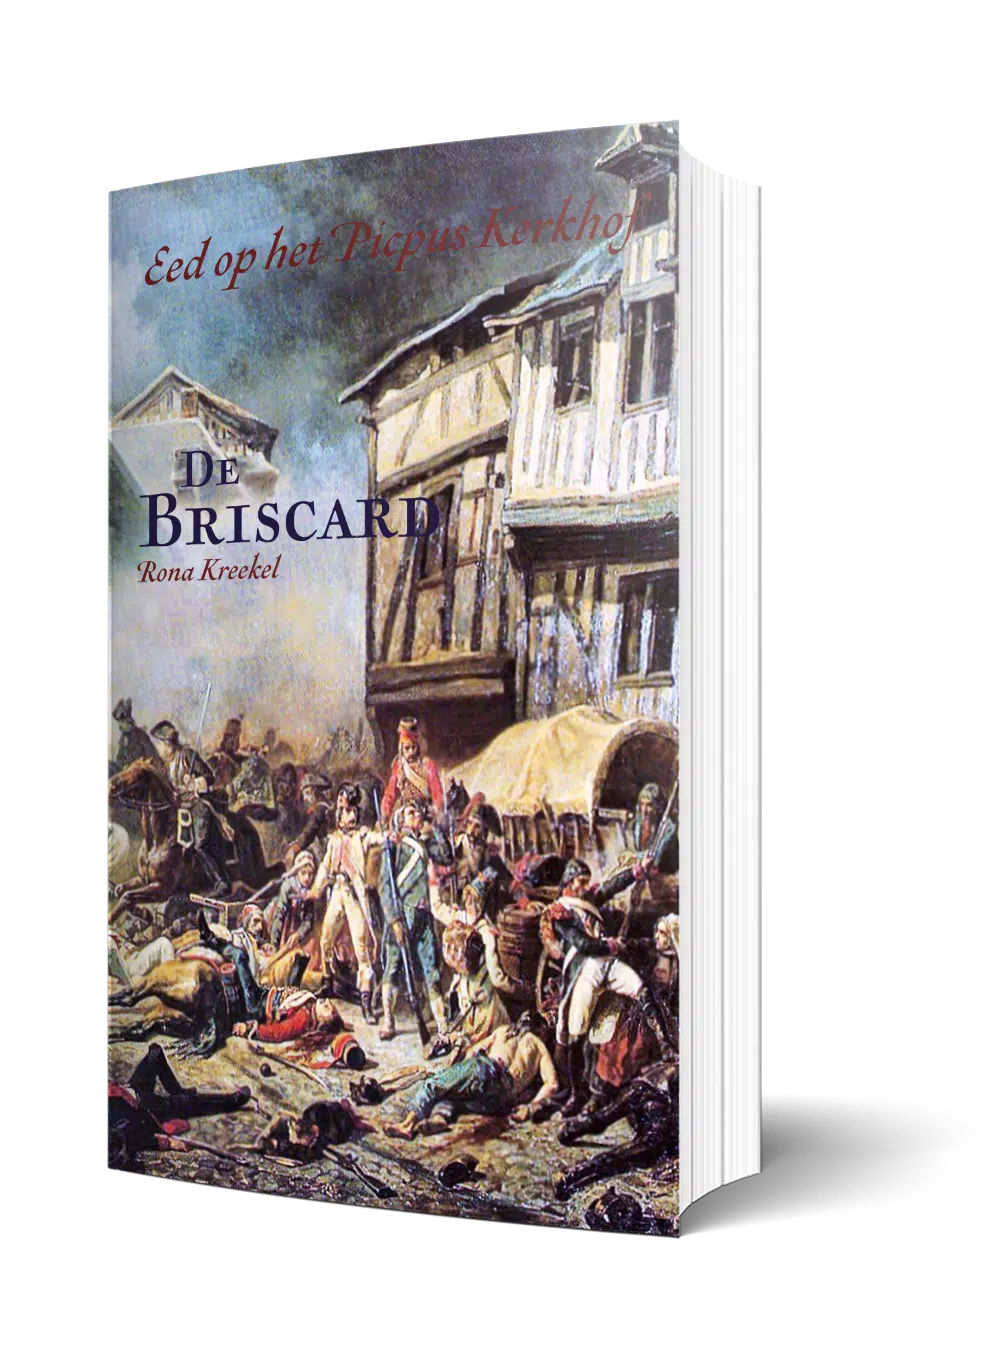 Eed op het Picpus Kerkhof – De Briscard